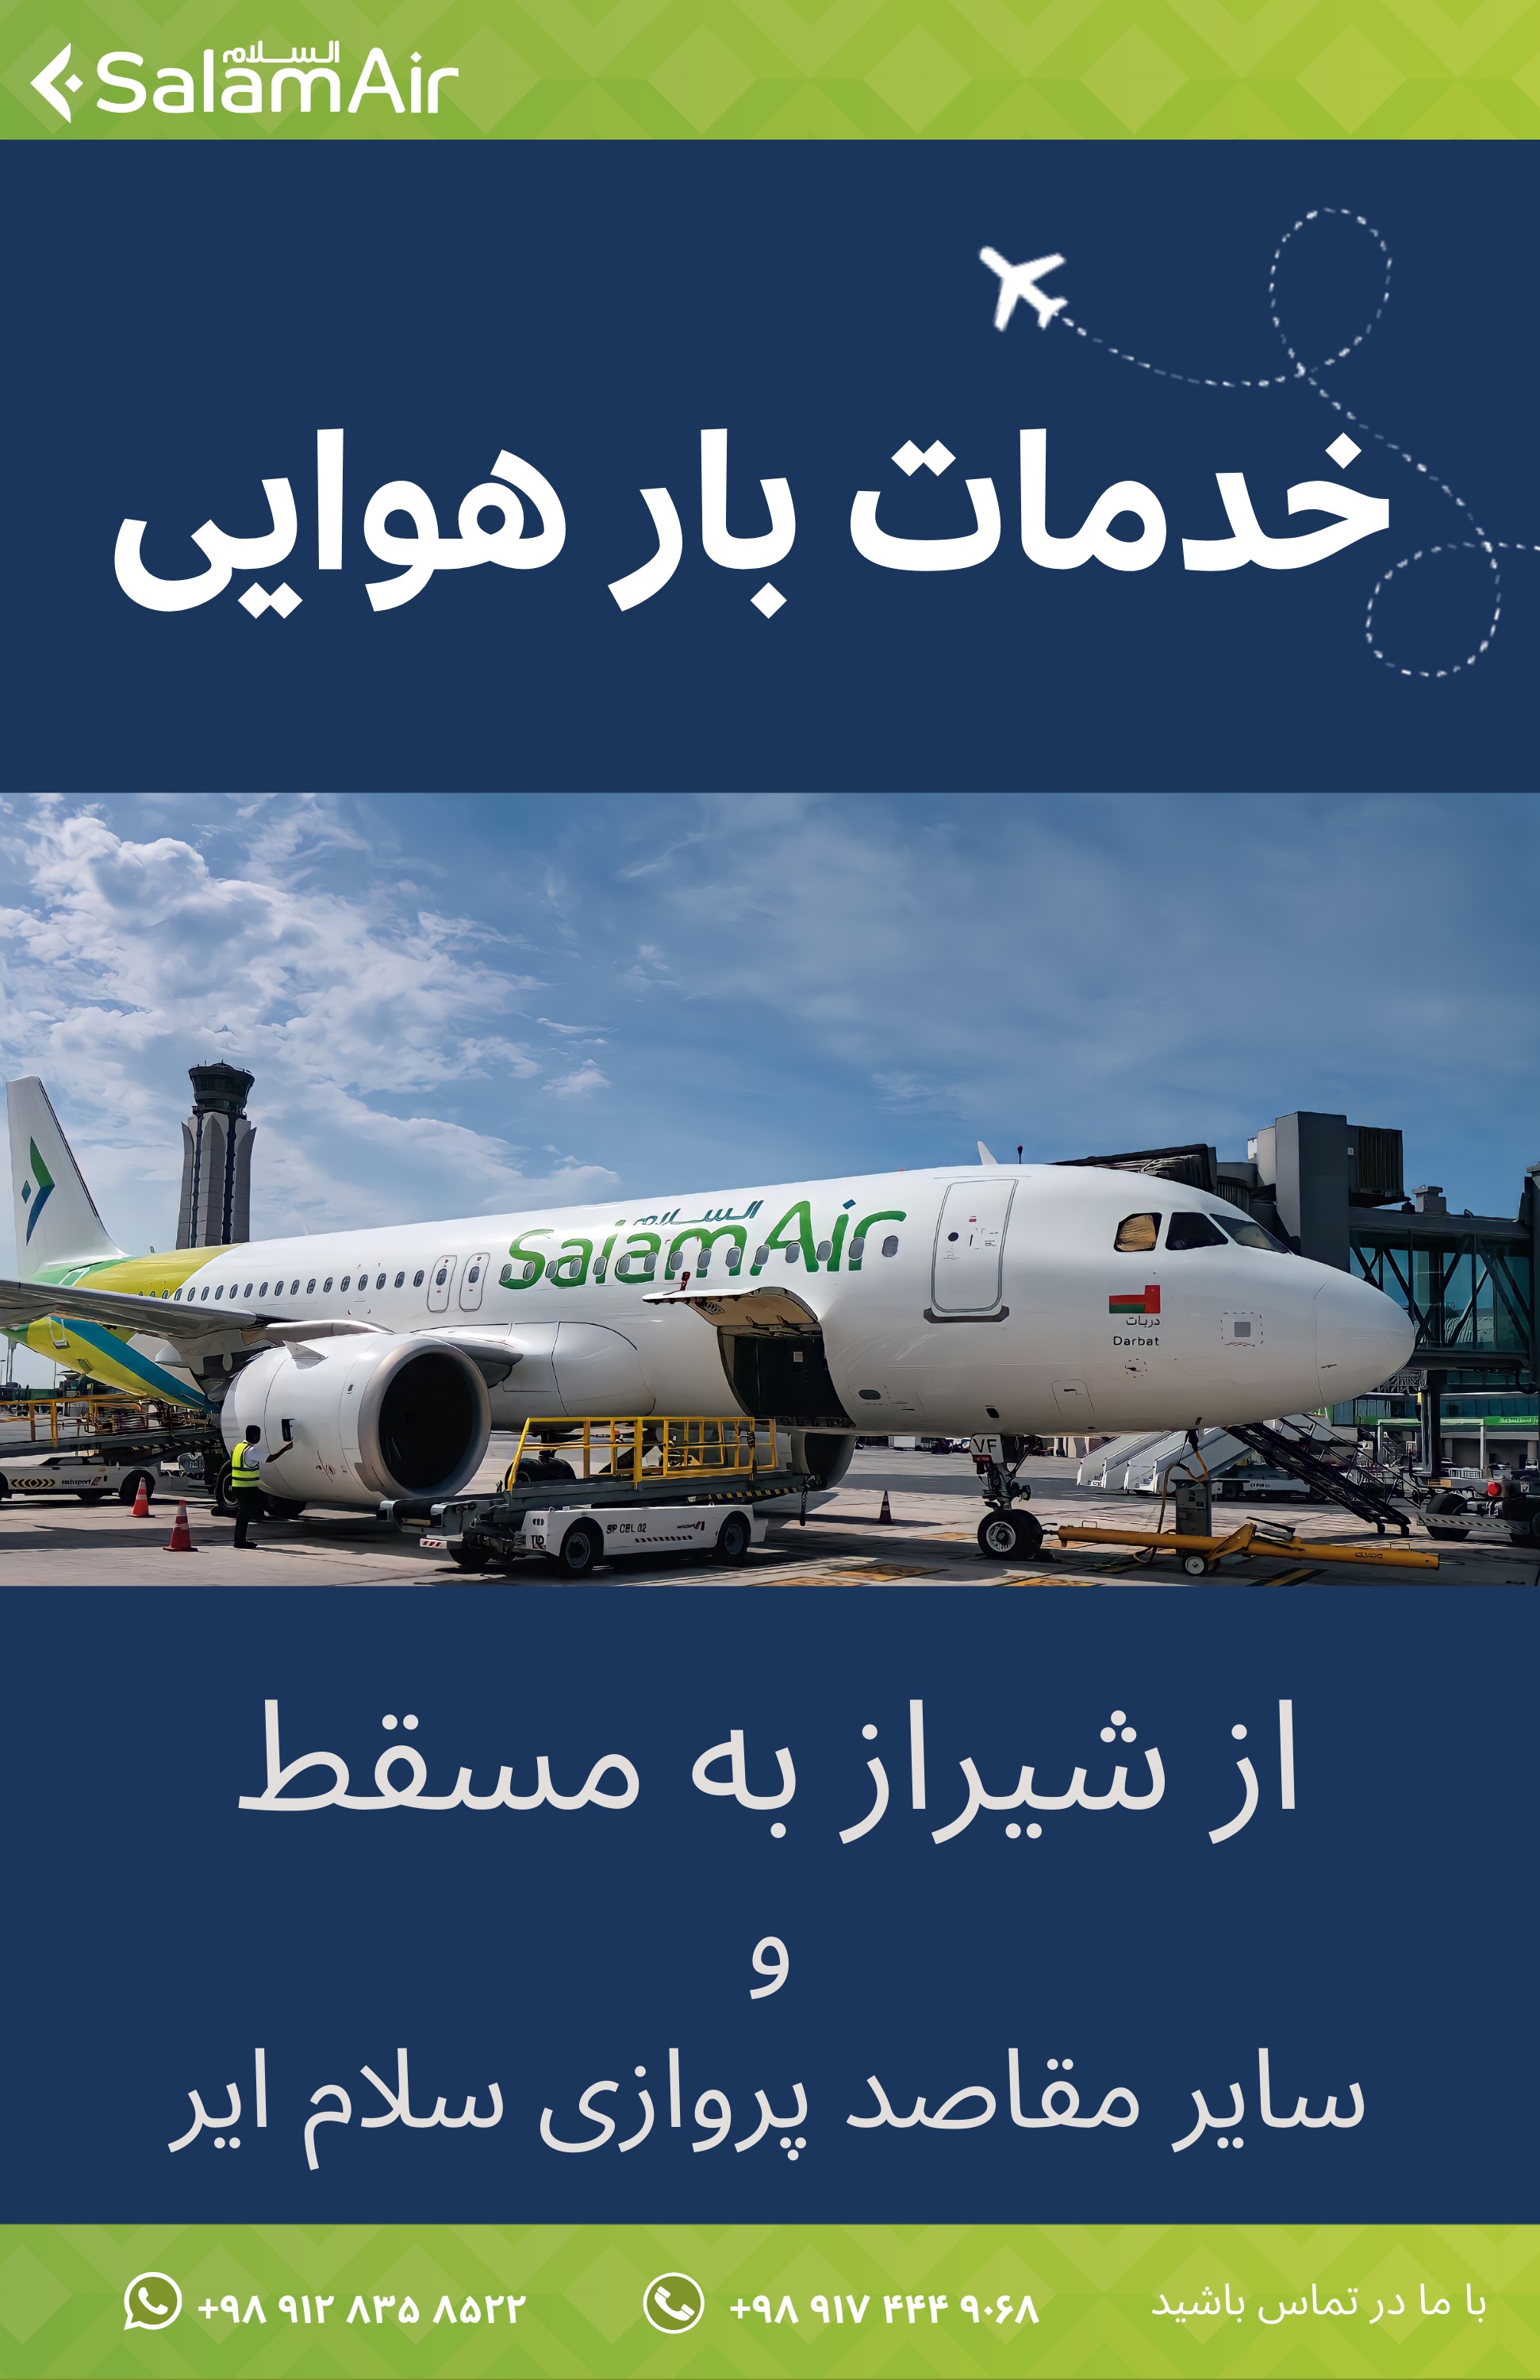 بخشنامه و اطلاعیه   هواپیمایی سلام ایر درباره خدمات بار هوایی از شیراز به مسقط و سایر مقاصد پروازی سلام ایر